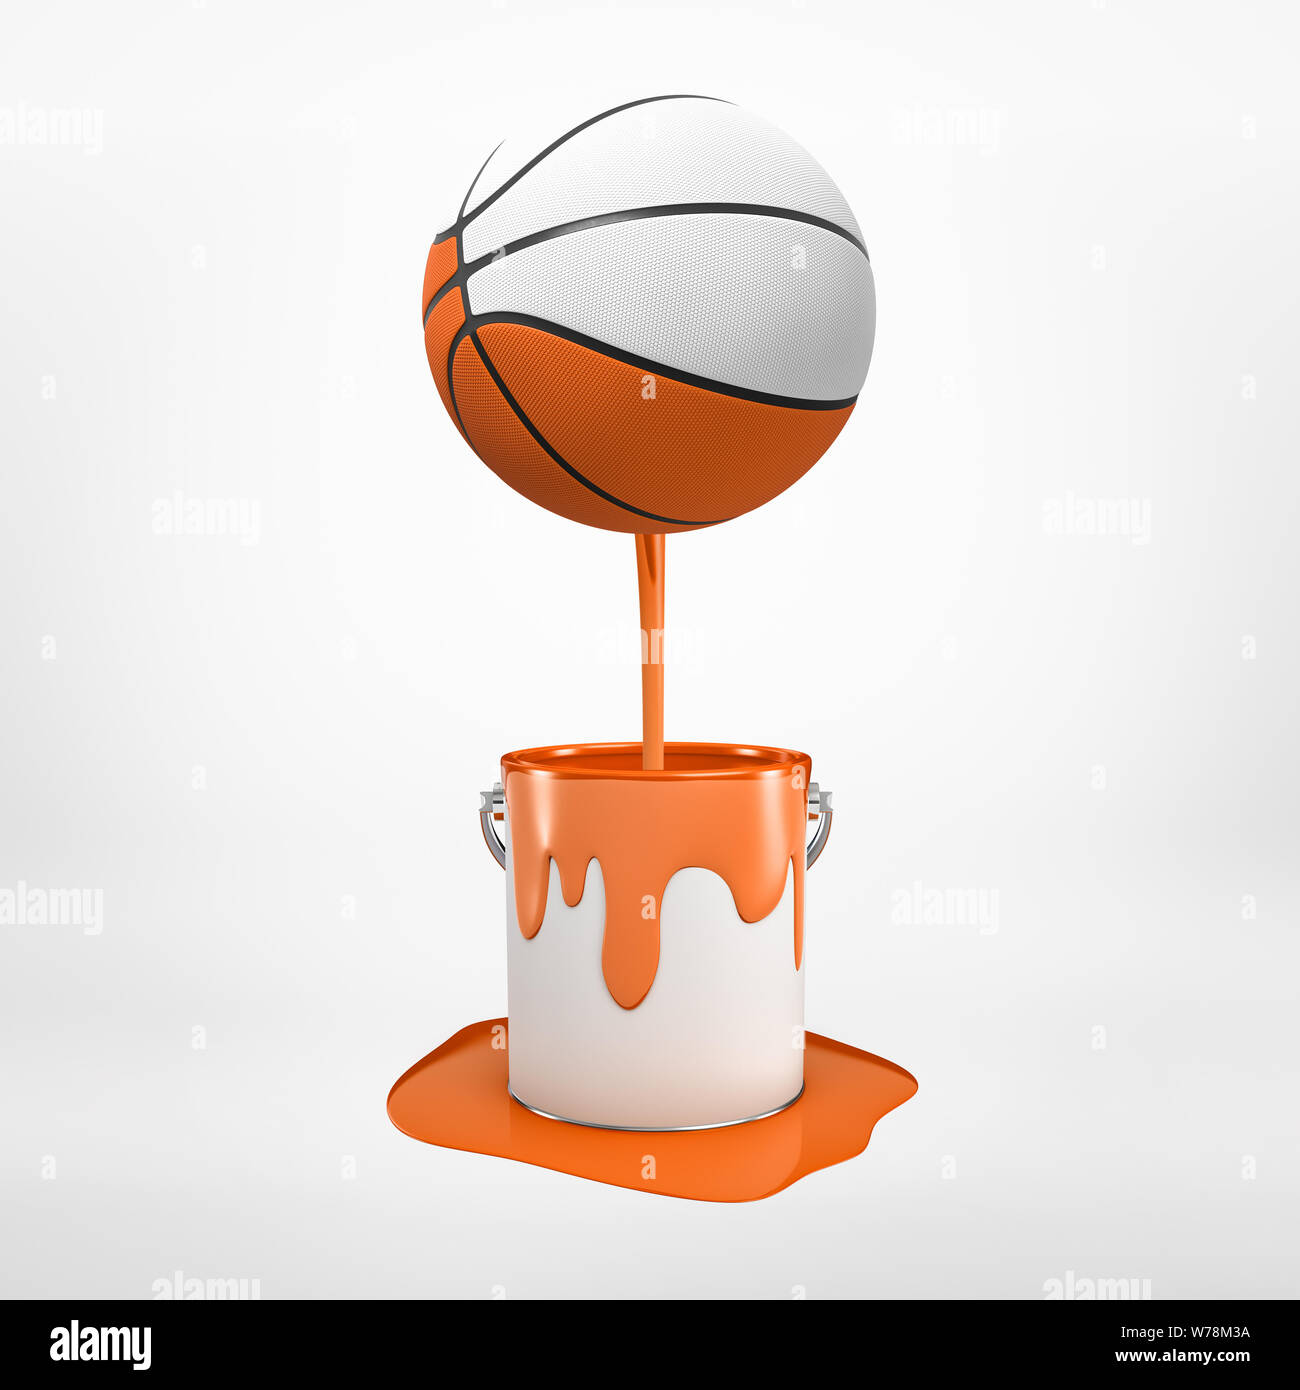 Le rendu 3D de basket-ball de couleur qui a été trempé dans la peinture orange et flotte dans l'air, dégoulinant de peinture, sur fond clair. Eq Sports Banque D'Images